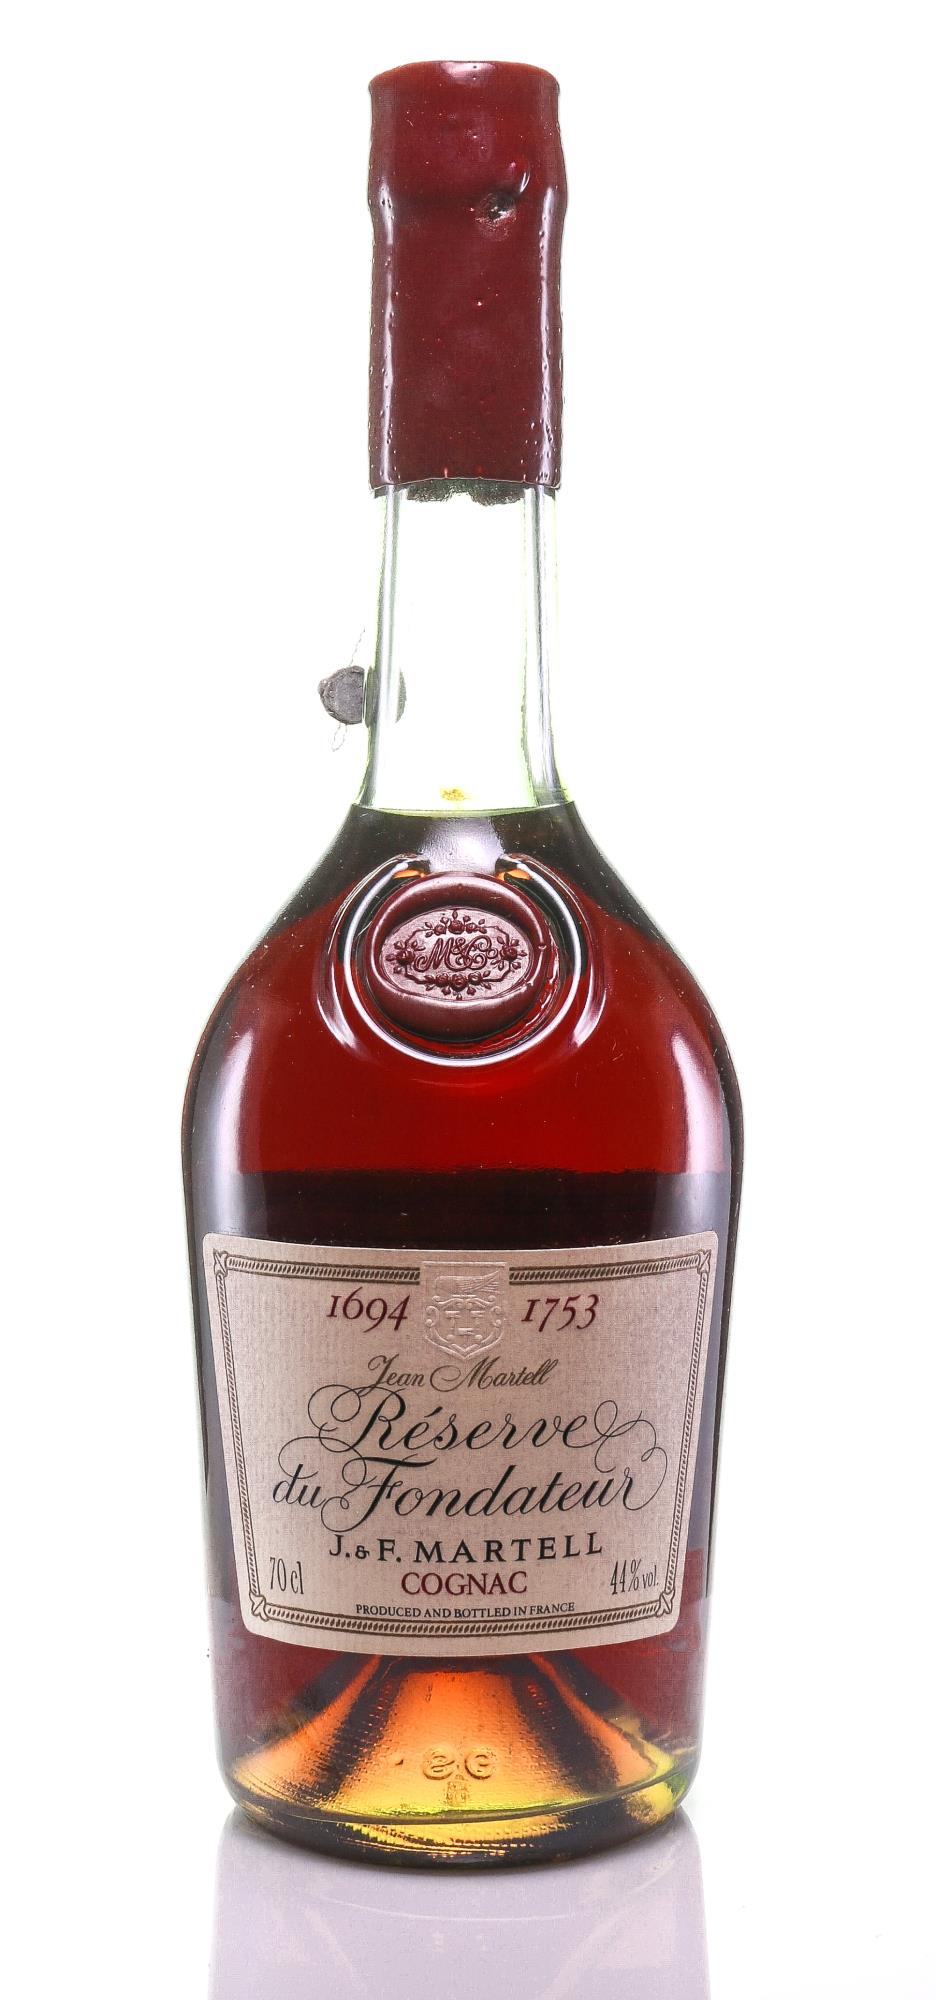 Martell Reserve du Fondateur 1694 Cognac (1222/2160) - Rue Pinard